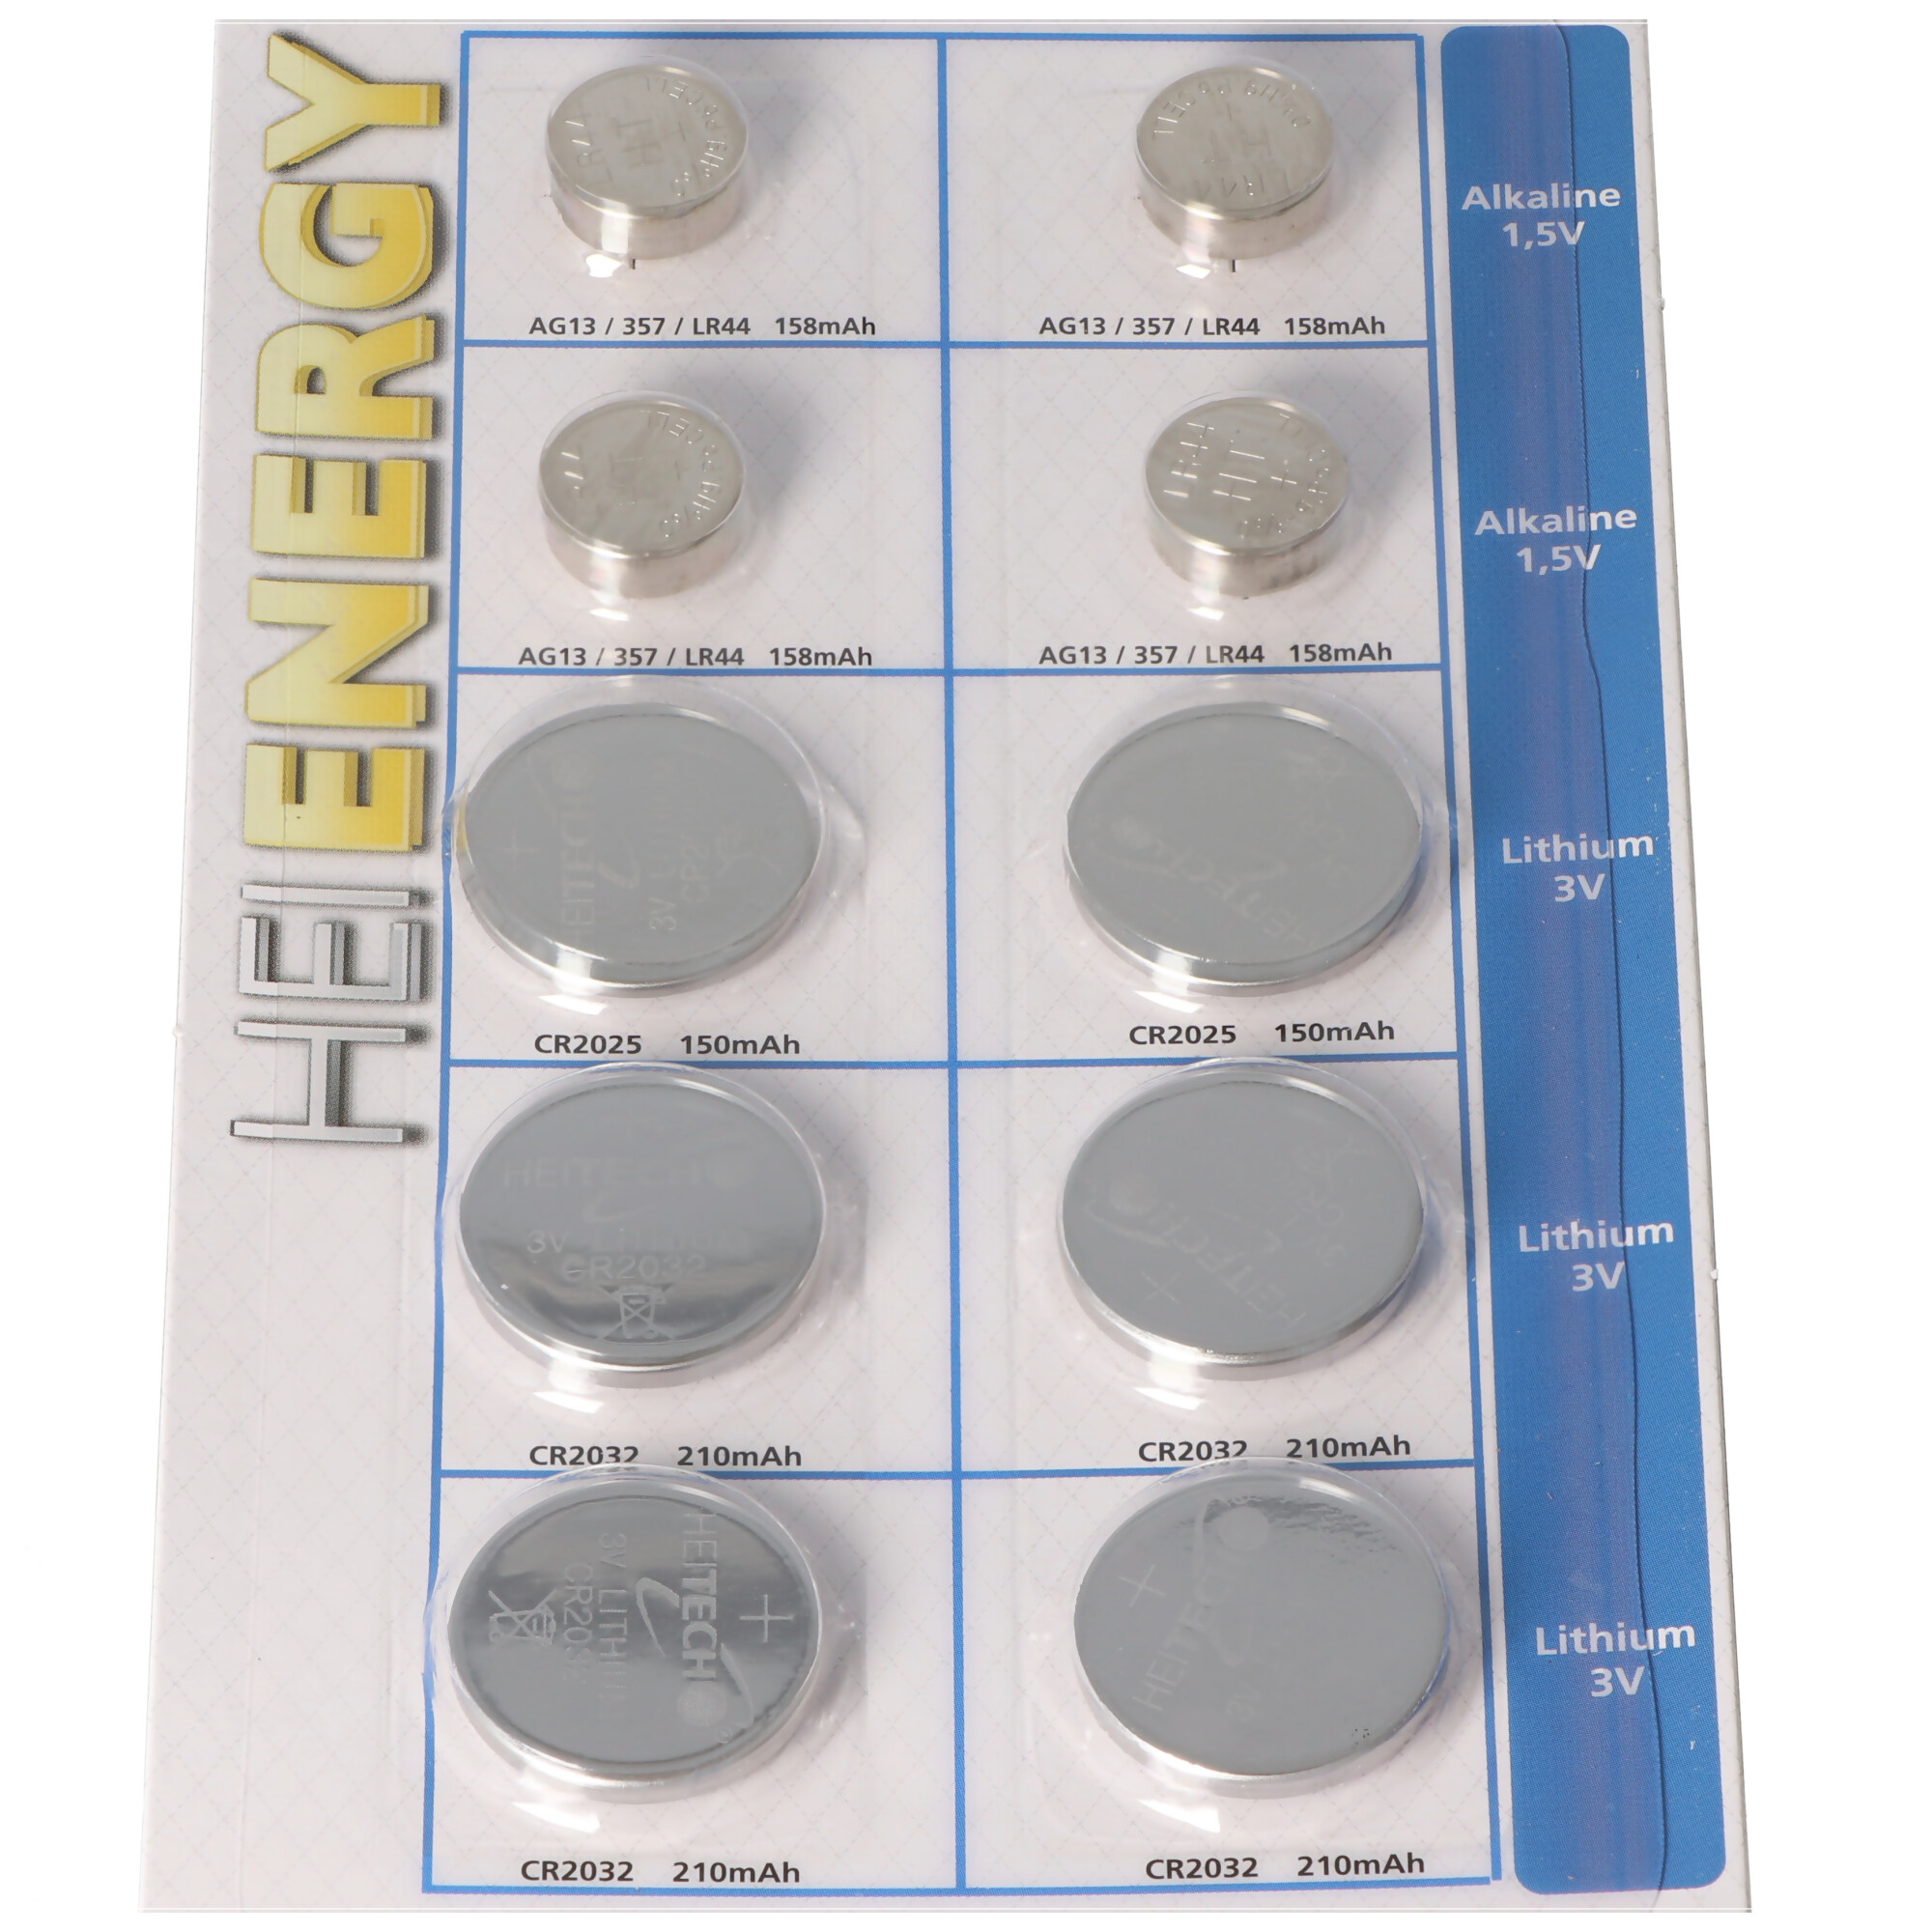 10 Stück Alkaline und Lithium Knopfzellen Batterien, für viele Anwendungsgebiete, sortiert im Set